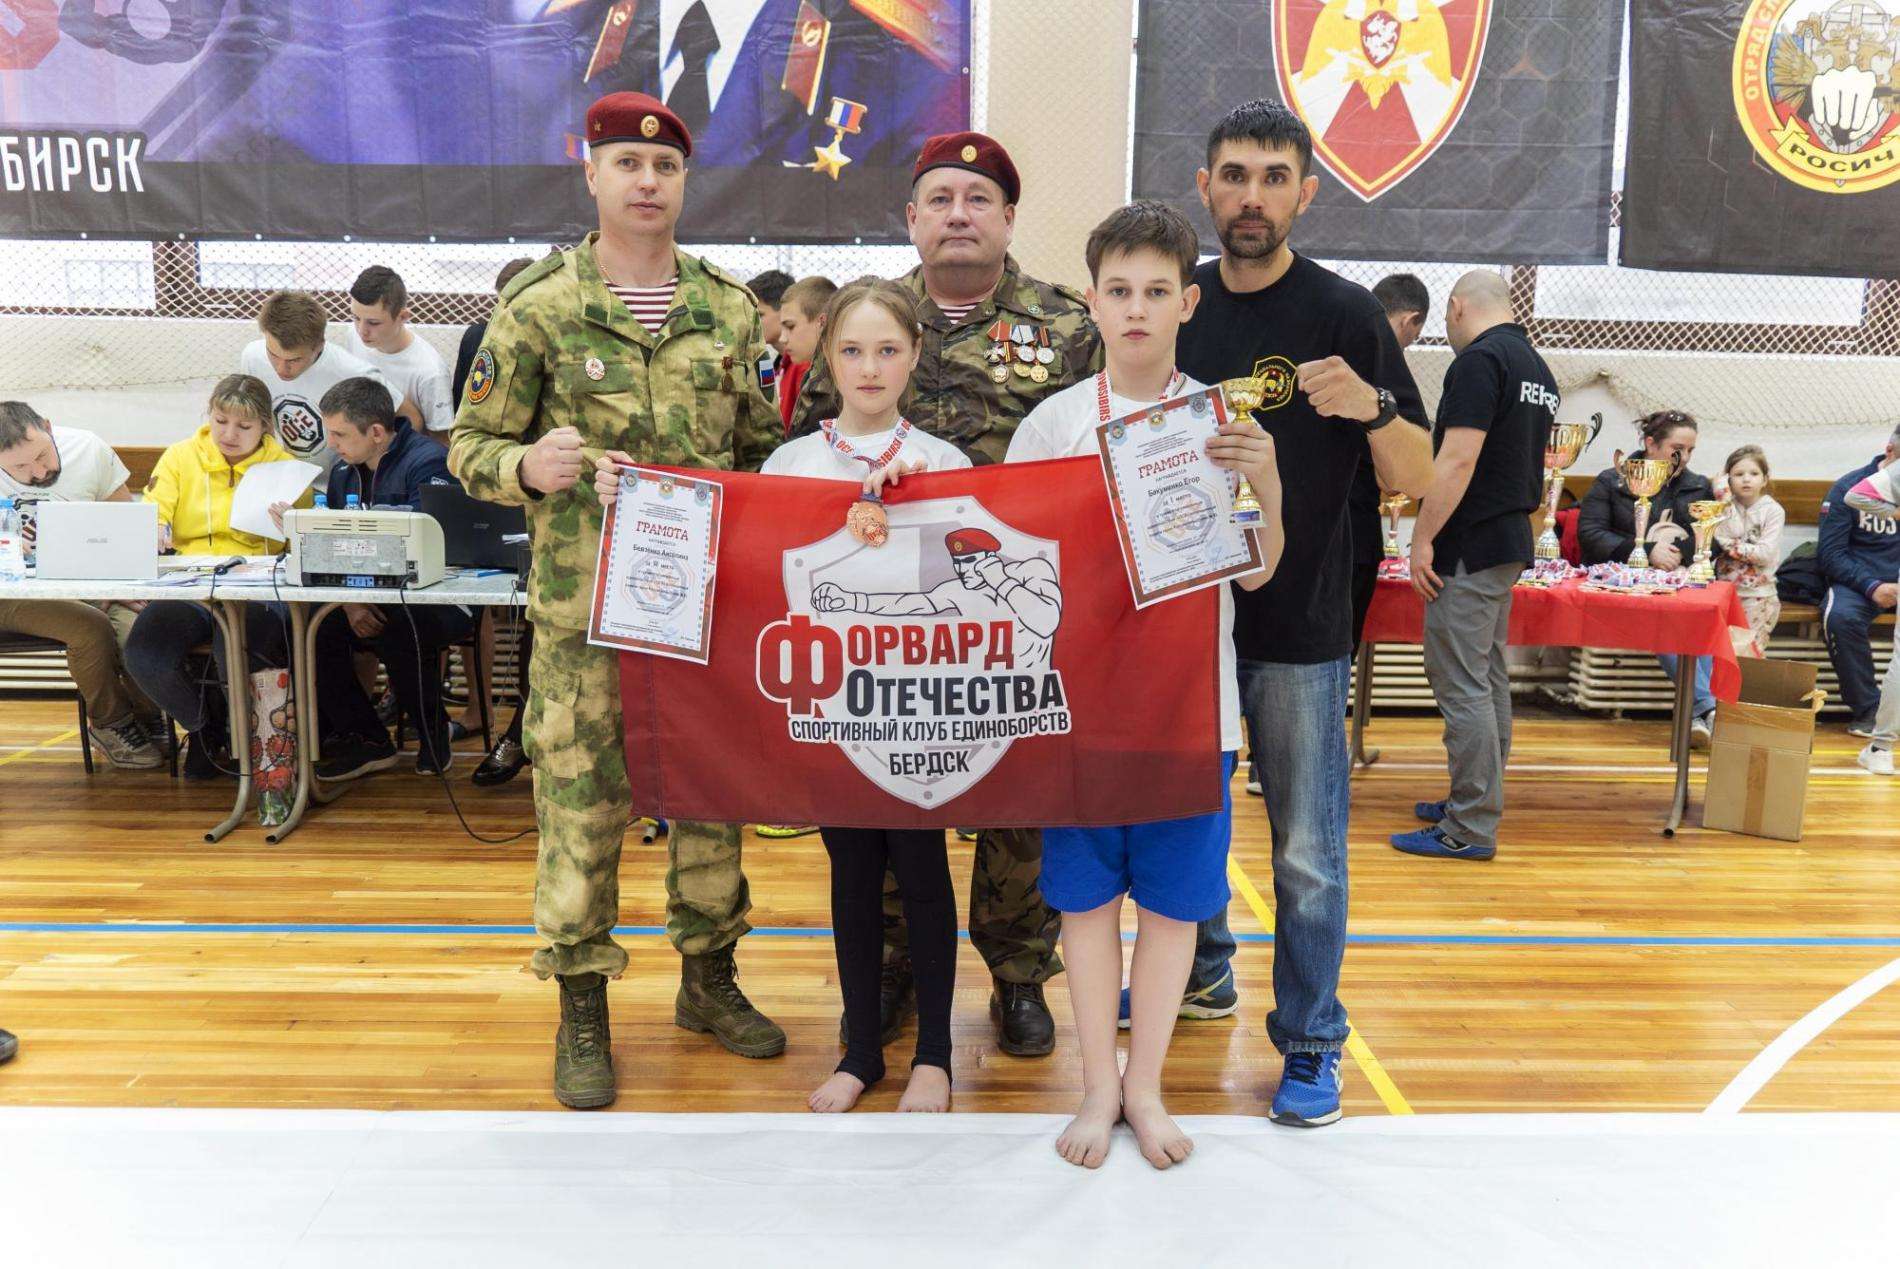 Воспитанники СКЕ «Форвард Отечества Бердск» успешно выступили на региональном турнире 